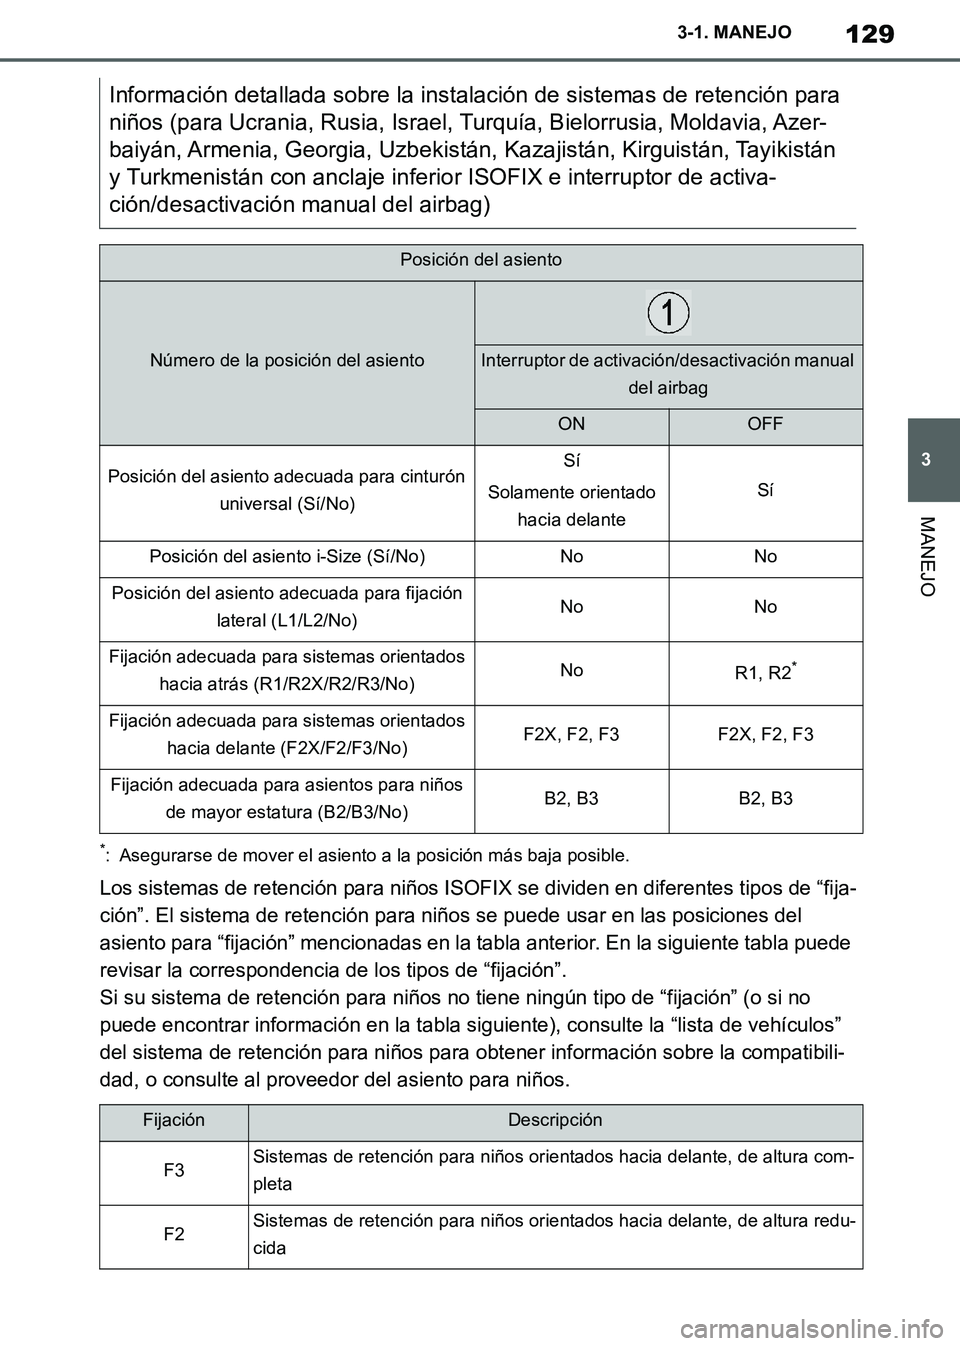 TOYOTA SUPRA 2019  Manuale de Empleo (in Spanish) 129
3
Supra Owners Manual_ES
3-1. MANEJO
MANEJO
*: Asegurarse de mover el asiento a la posición más baja posible.
Los sistemas de retención para niños ISOFIX se dividen en diferentes tipos de “